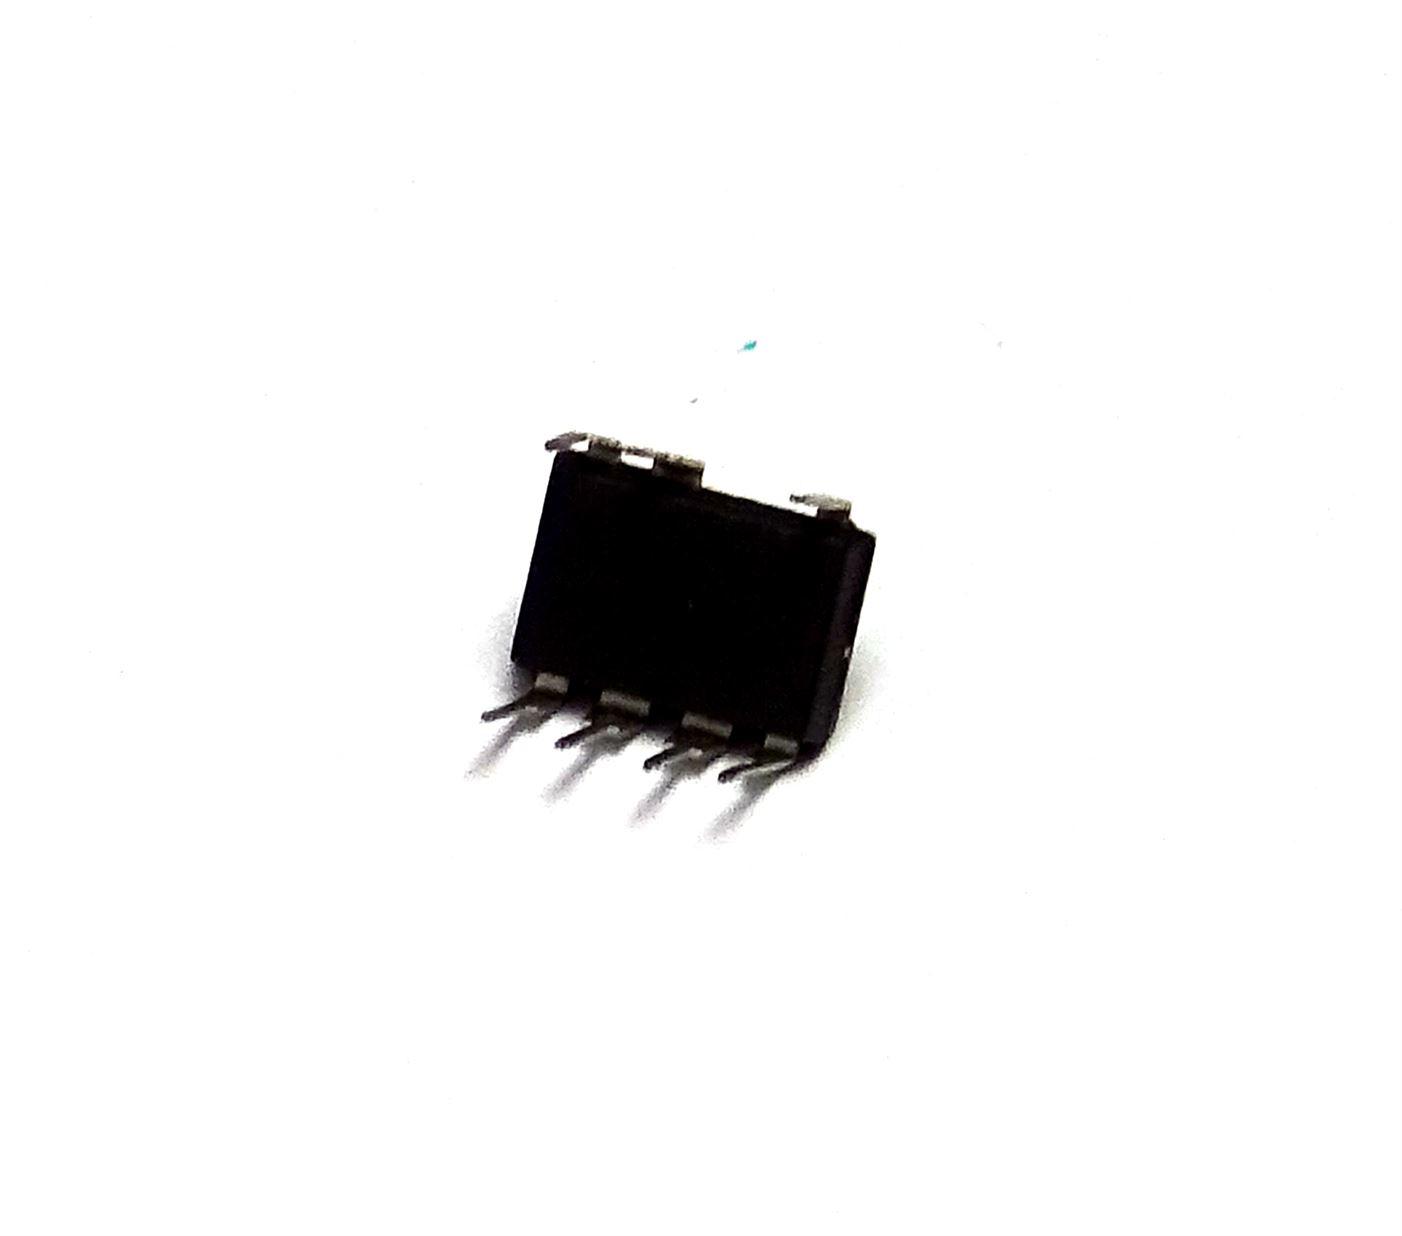 TNY276PN TNY276 Integrated Circuit DIP-7 - UK Seller